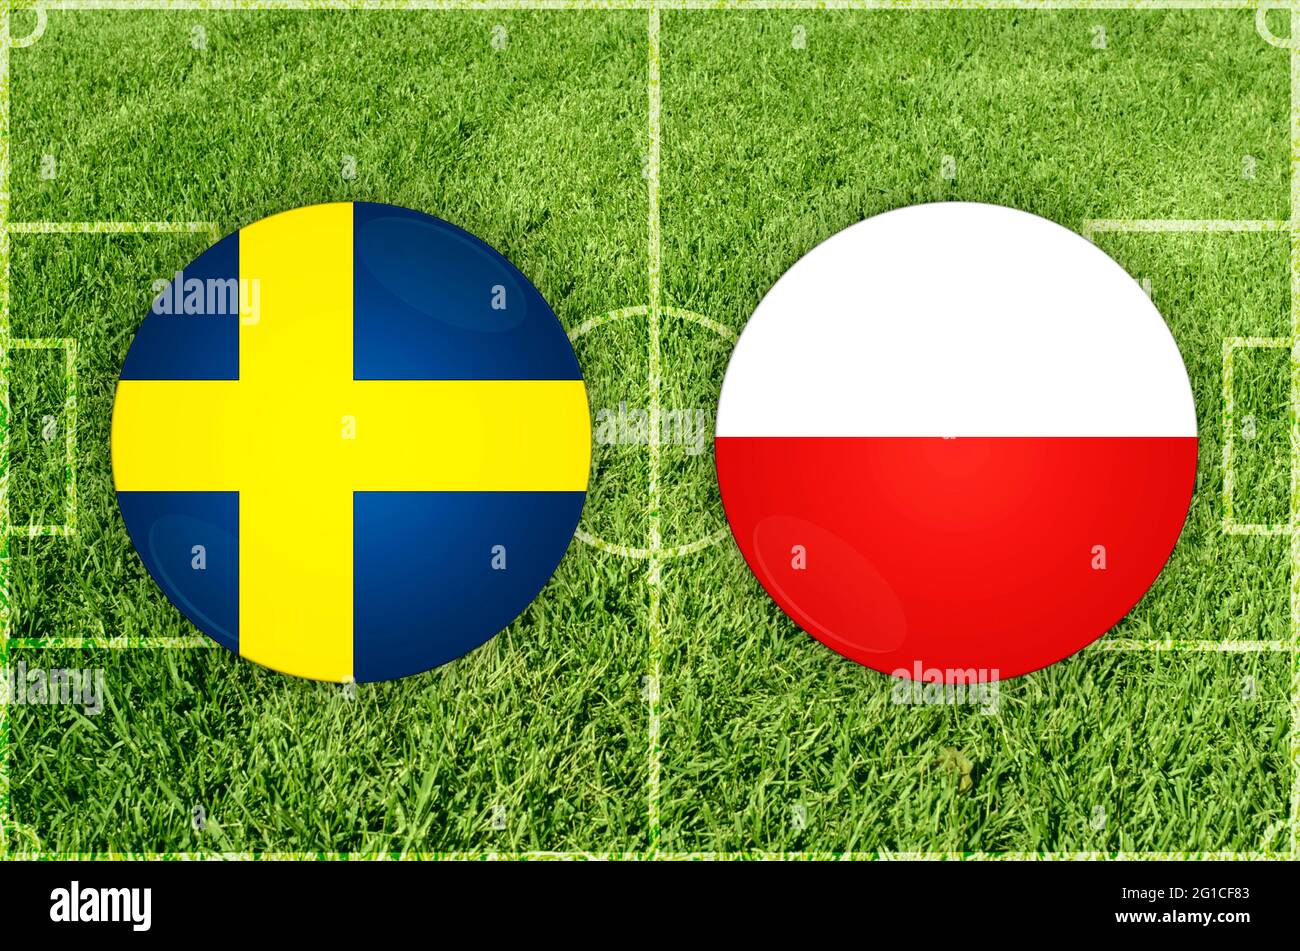 Sweden vs poland